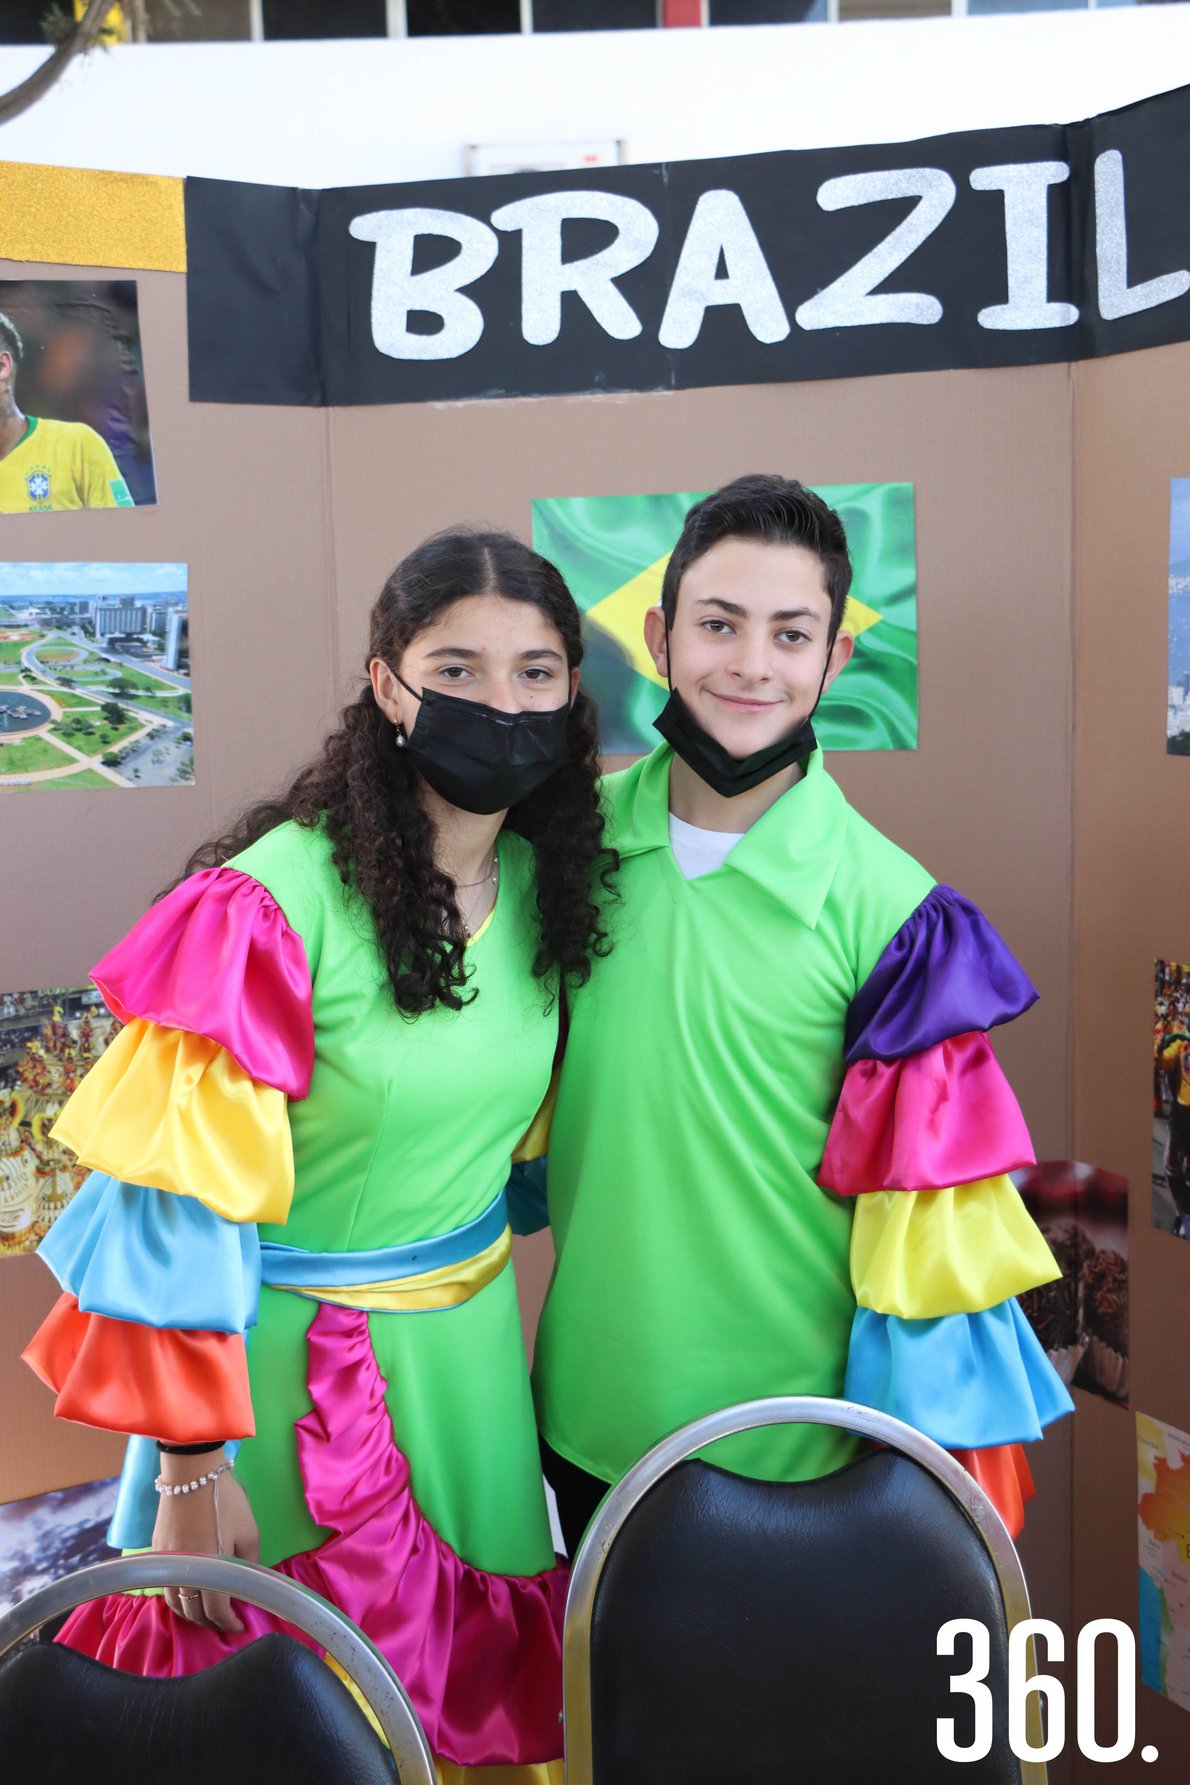 Tamara Garza y Octavio de Nigris representando Brasil.